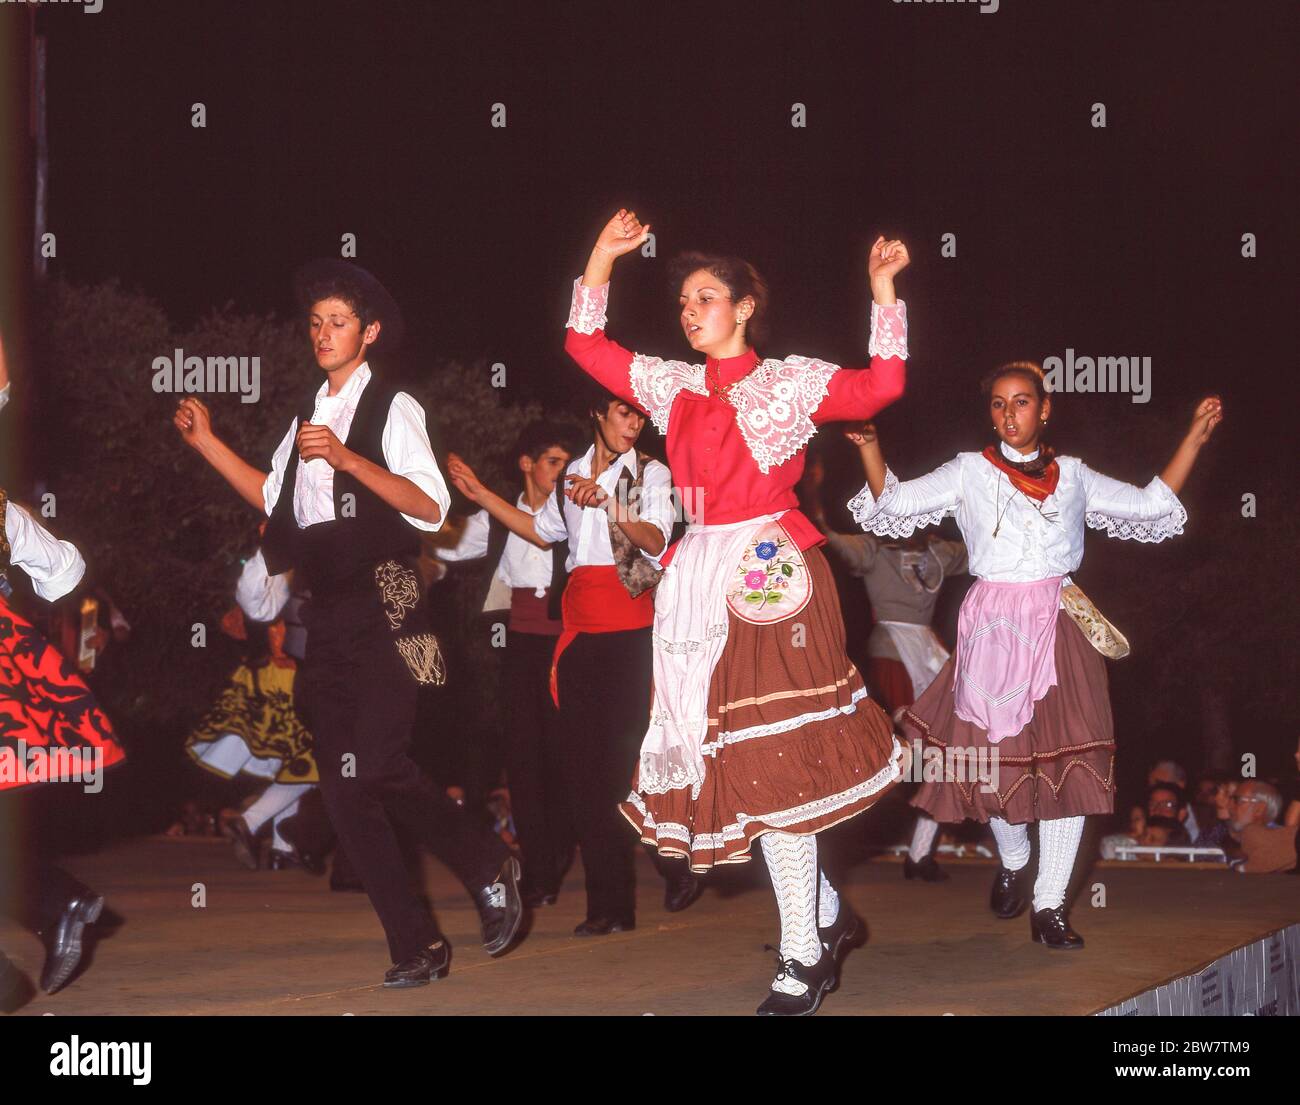 Giovani ballerini che si esibiscono all'aperto, Albufeira, regione dell'Algarve, Portogallo Foto Stock